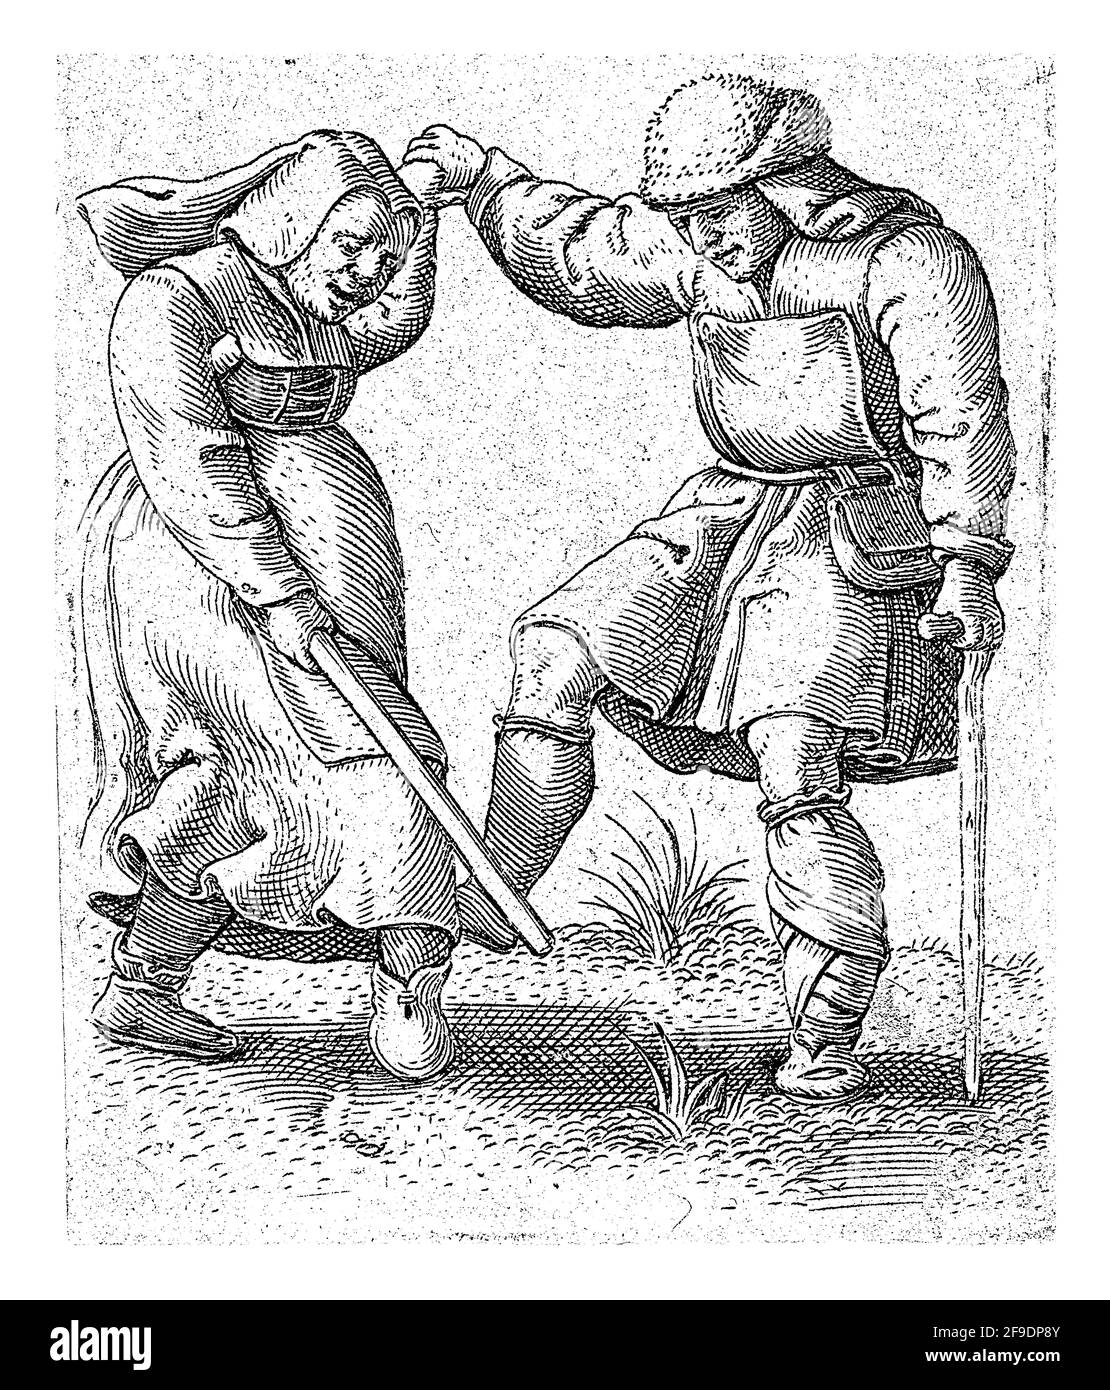 Eine Frau und ein Mann, die als Bauern gekleidet sind, tanzen und halten die Hände. Die Frau hält einen Stock in der anderen Hand und der Mann lehnt sich auf eine Krücke. Stockfoto